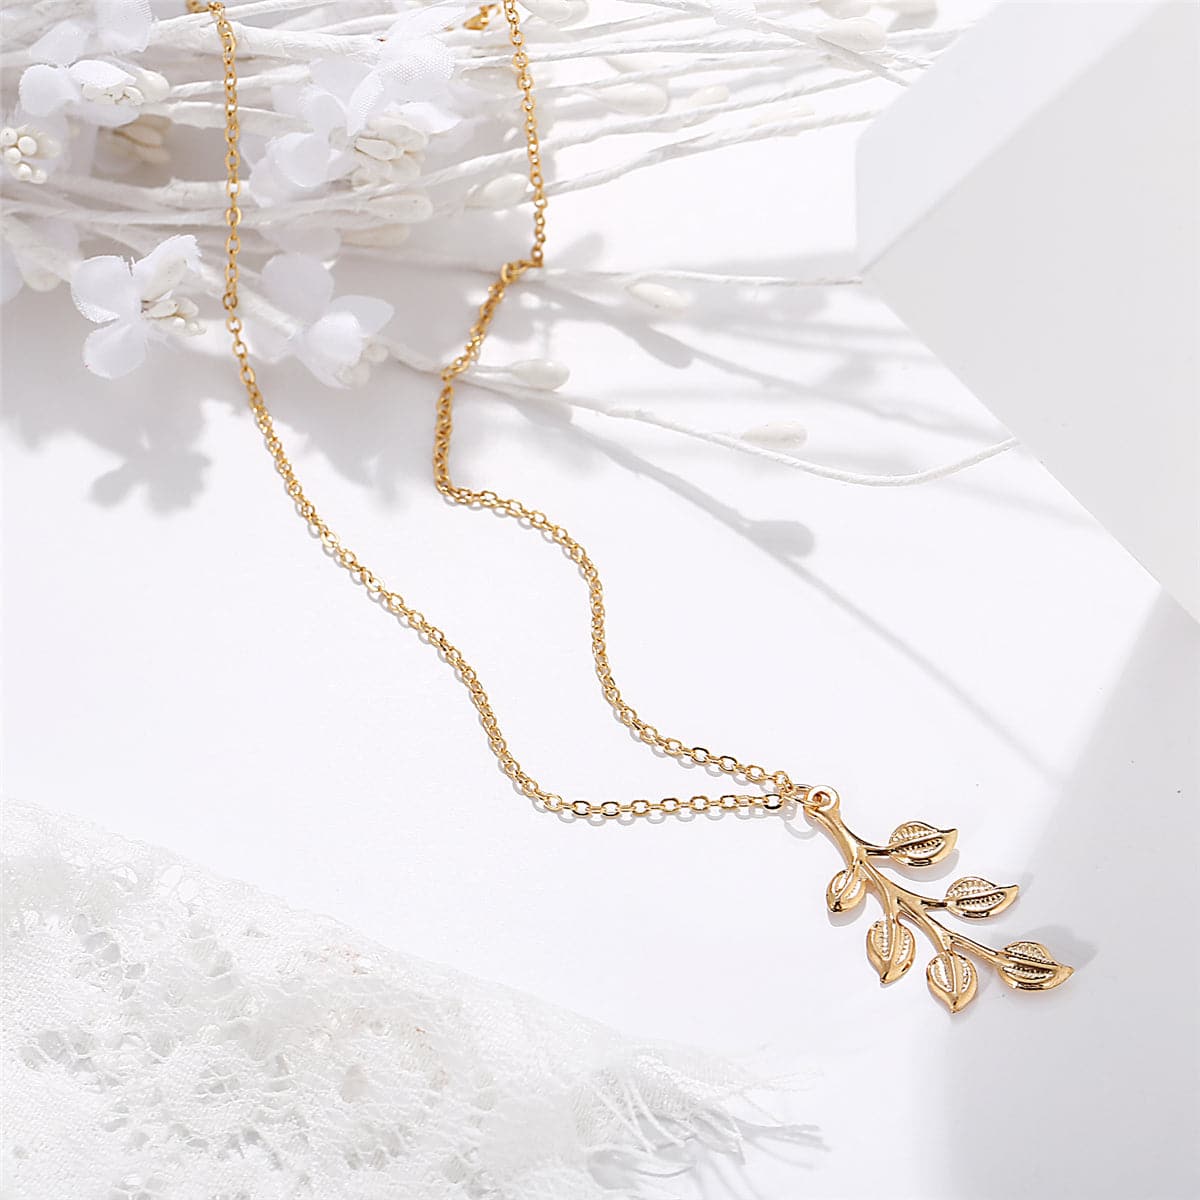 18K Gold-Plated Leaf Pendant Necklace